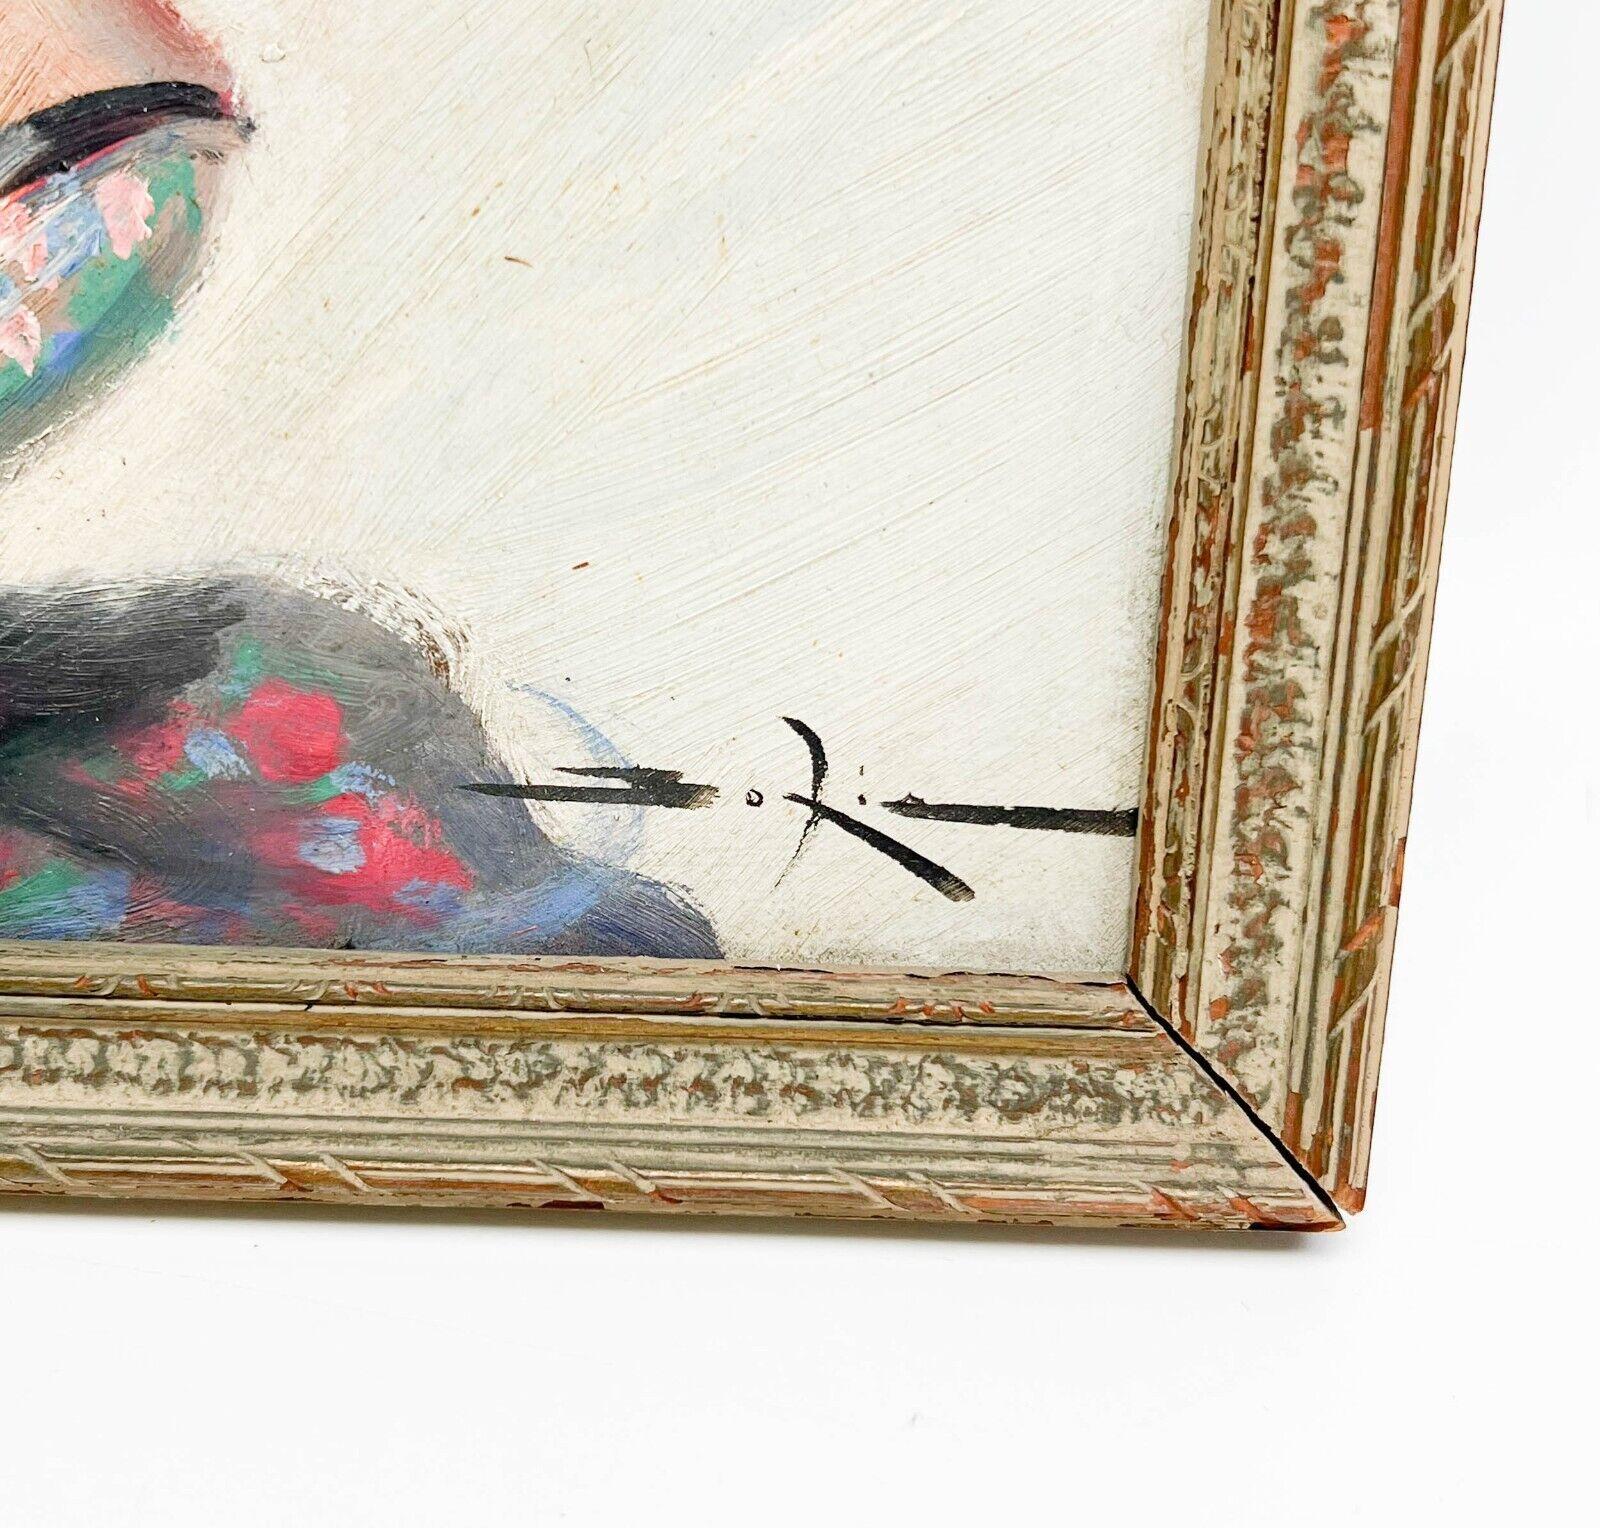 Peinture sur panneau d'une femme parisienne encadrée Signée Boxia Possiblement Domergue

Peinture sur carton d'une femme parisienne, 1ère moitié du 20e siècle. La peinture représente une femme aux cheveux roux portant un chapeau. Dans un cadre en